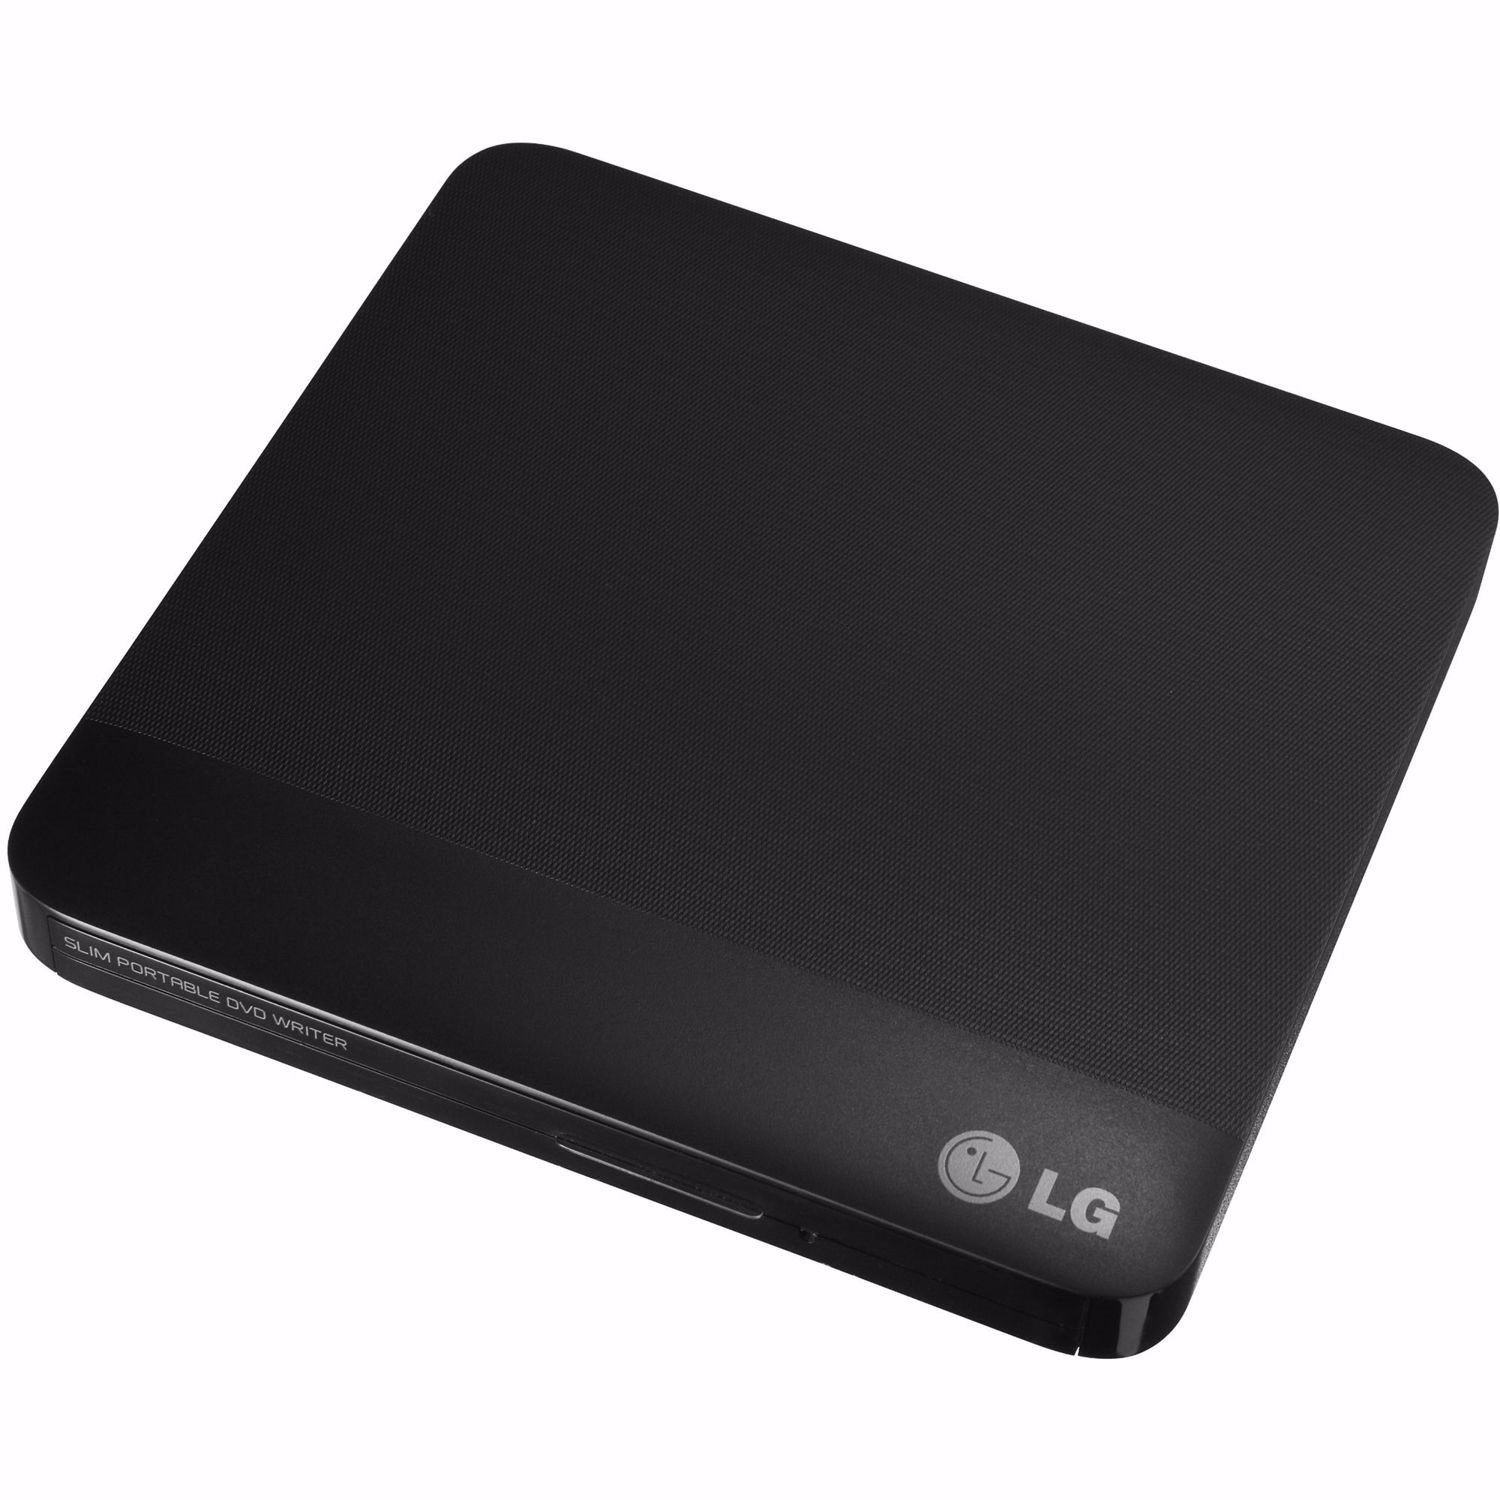 LG GP50NB40 DVD-Writer - External - Retail Pack